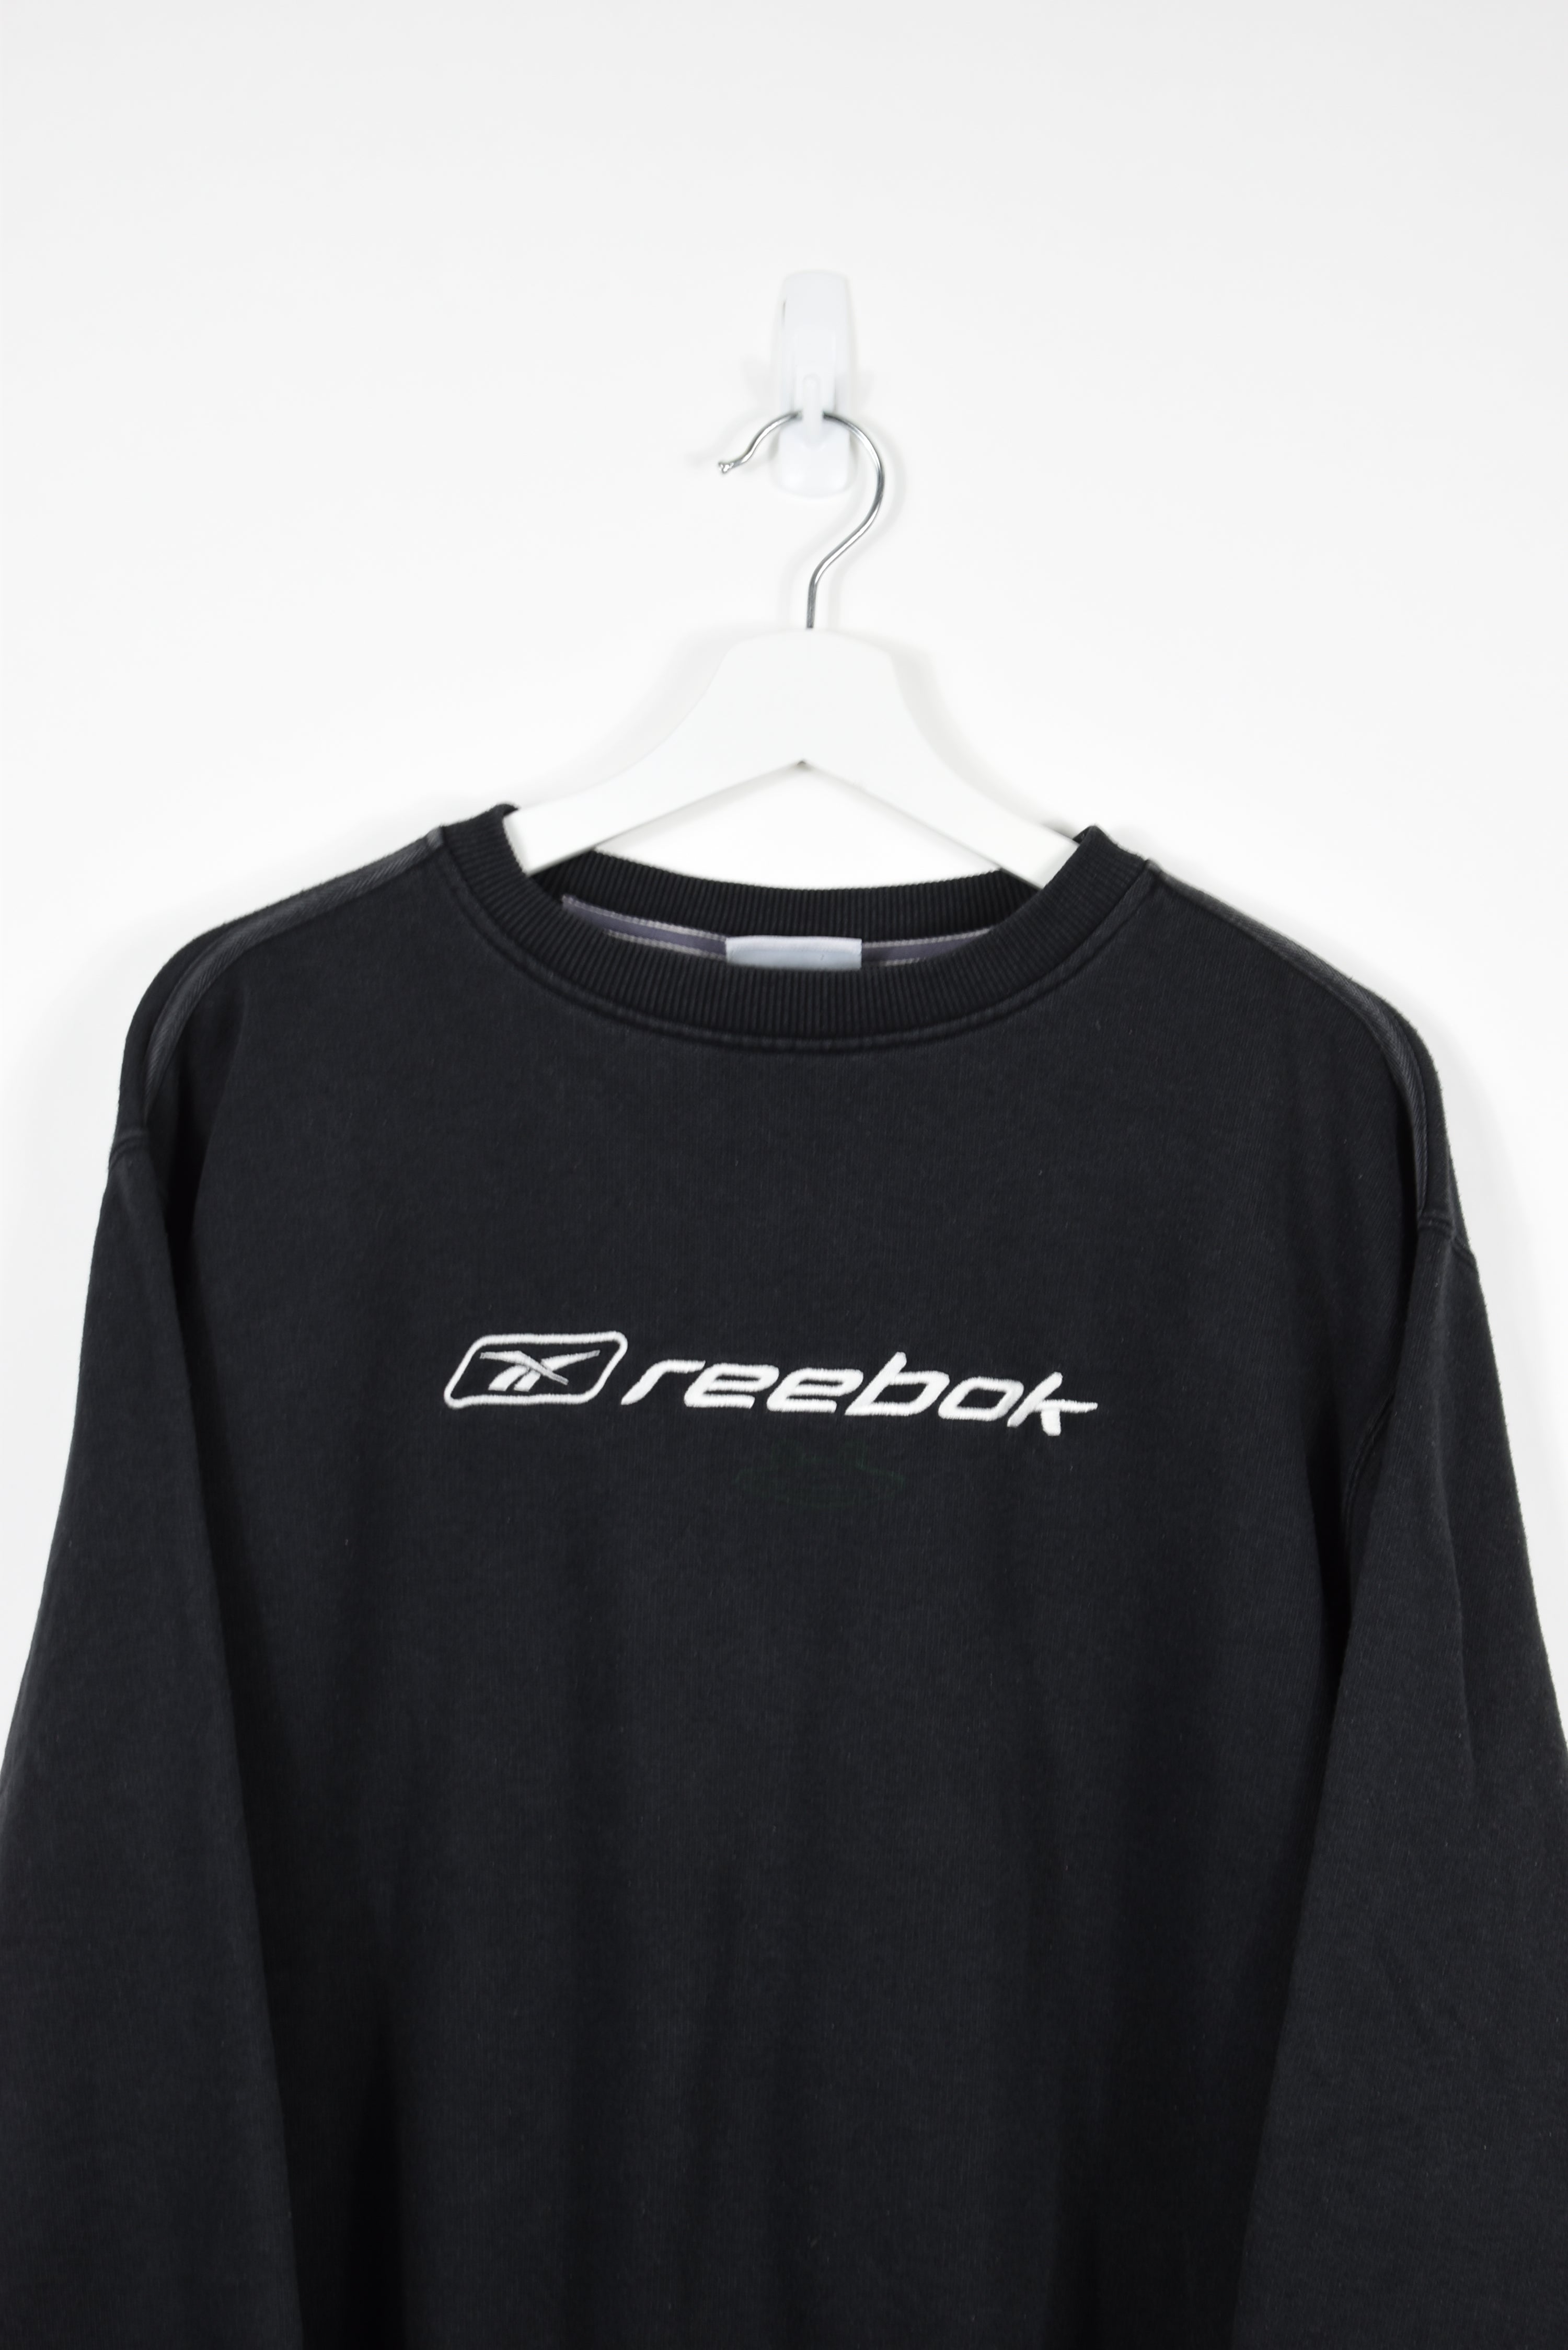 Vintage Reebok Embroidery Sweatshirt LARGE